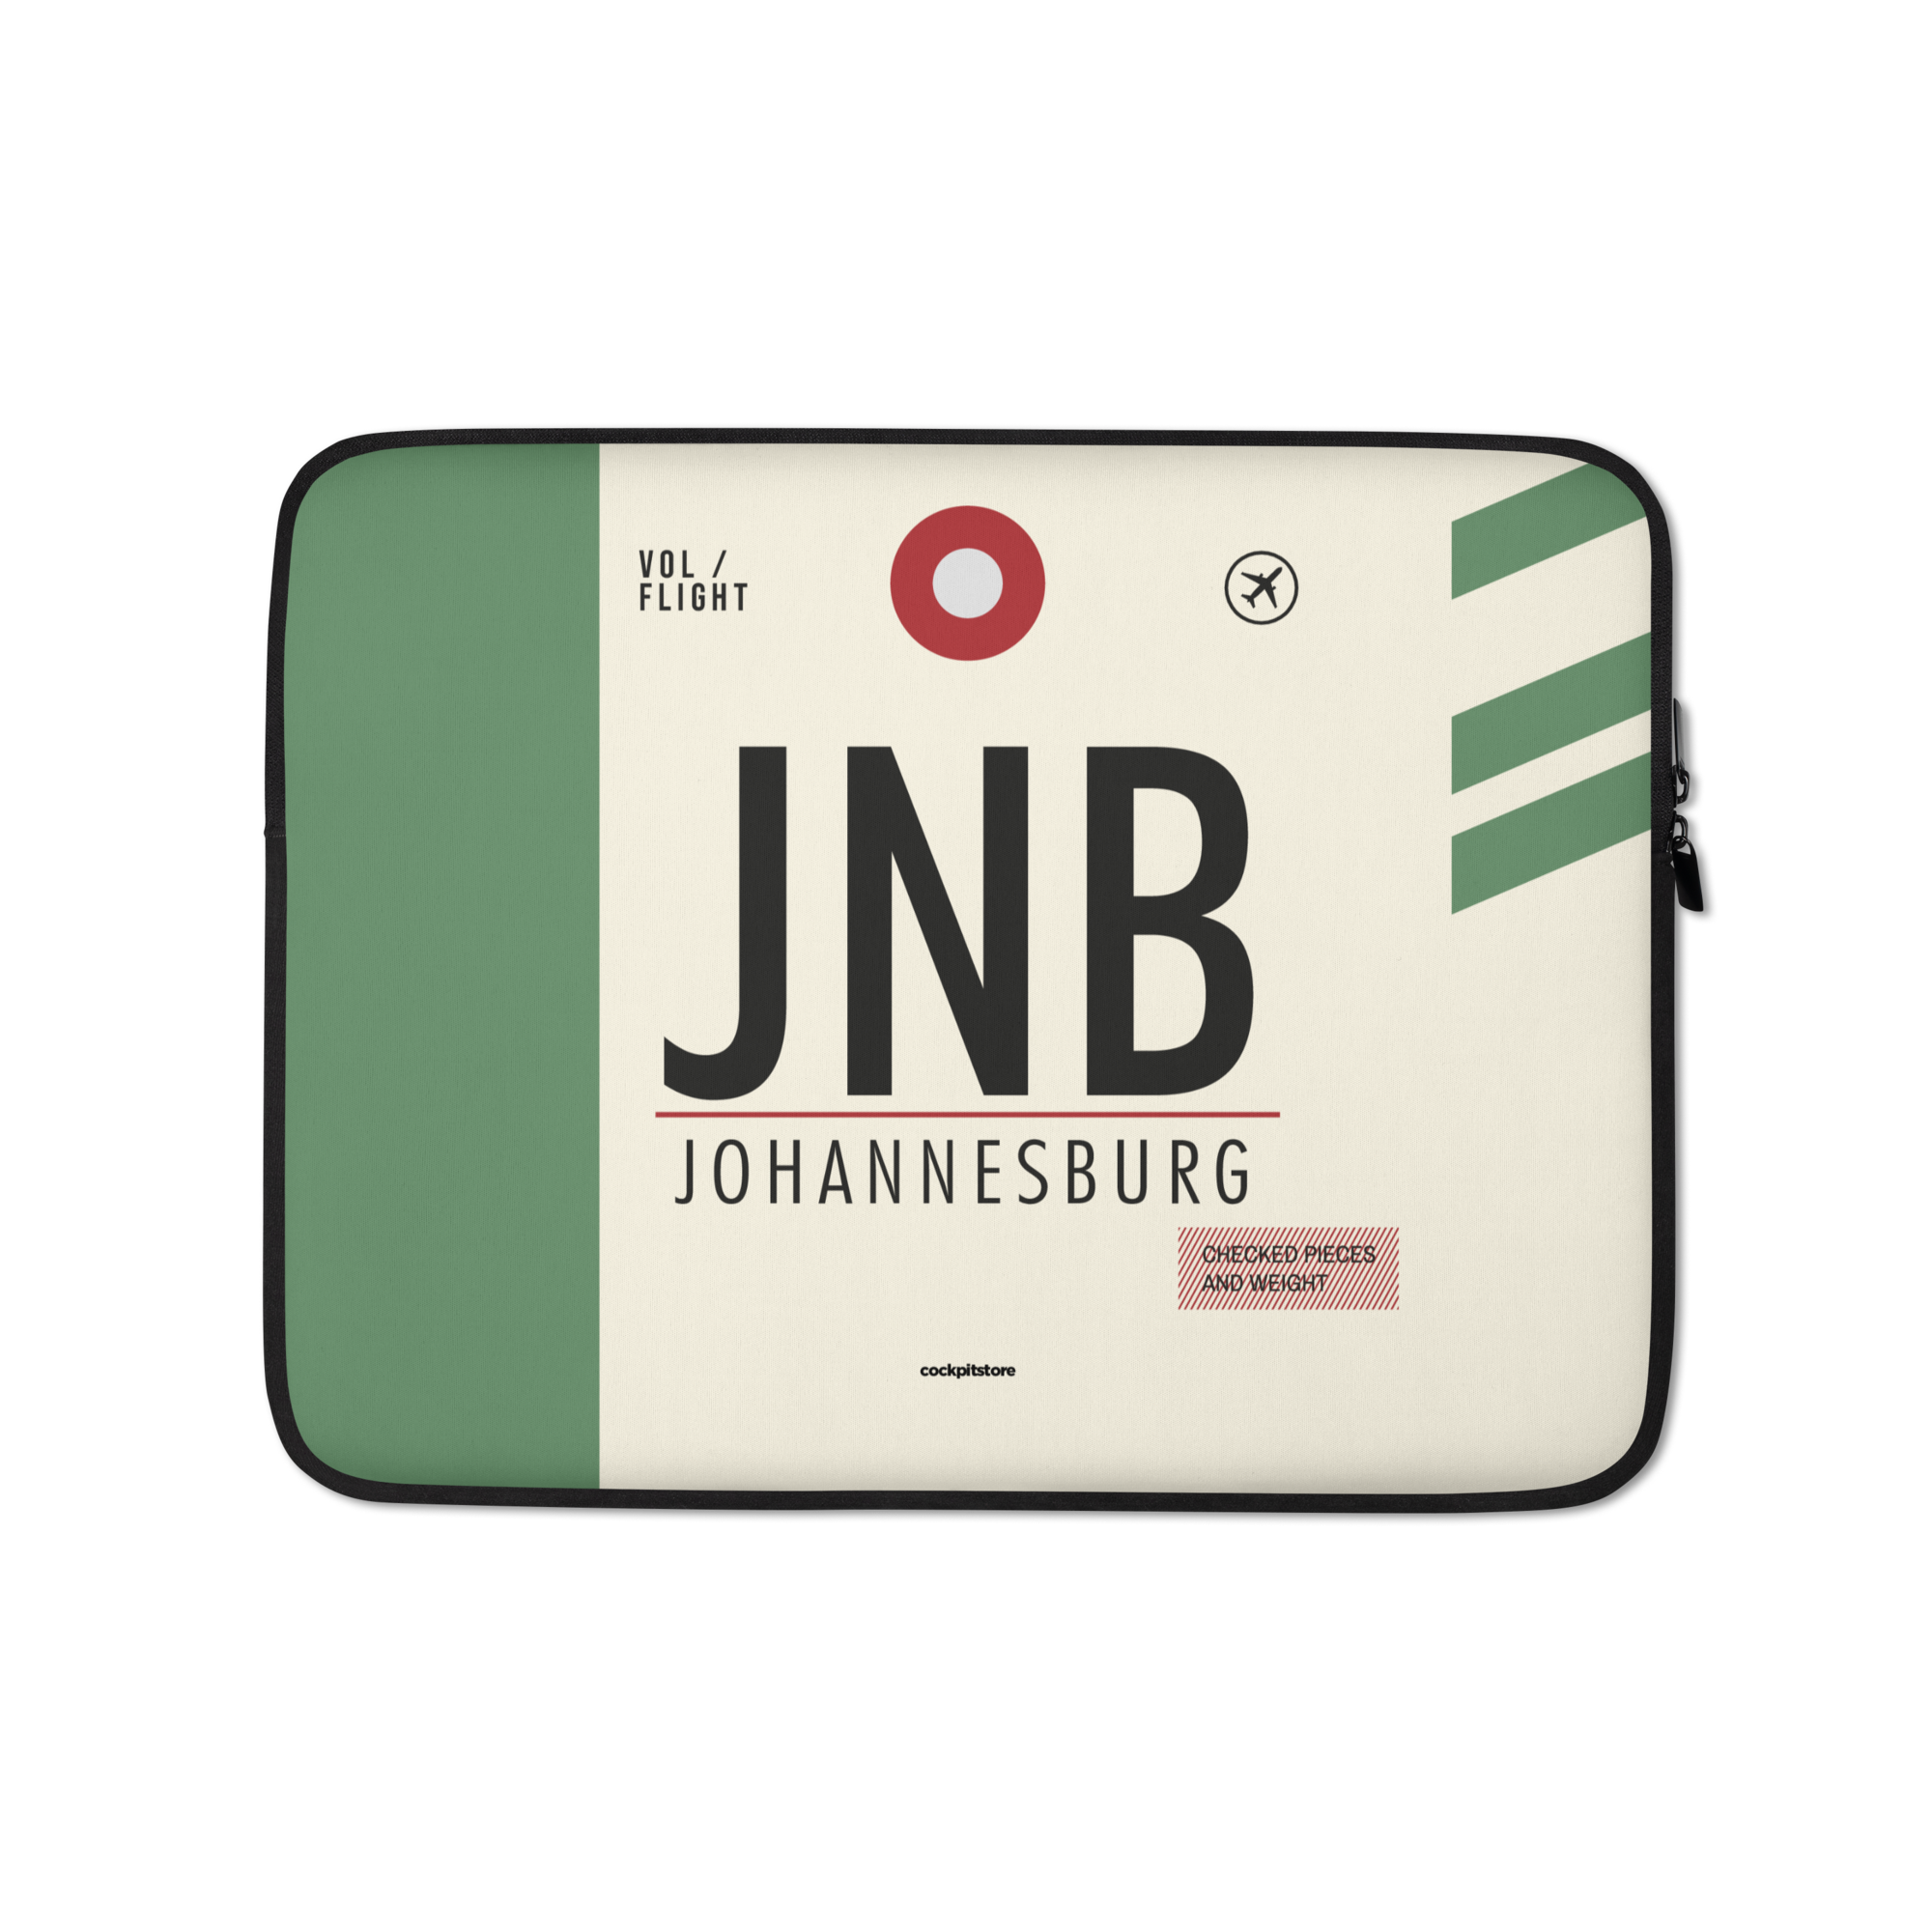 JNB - Johannesburg Laptop Sleeve Tasche 13in und 15in mit Flughafencode